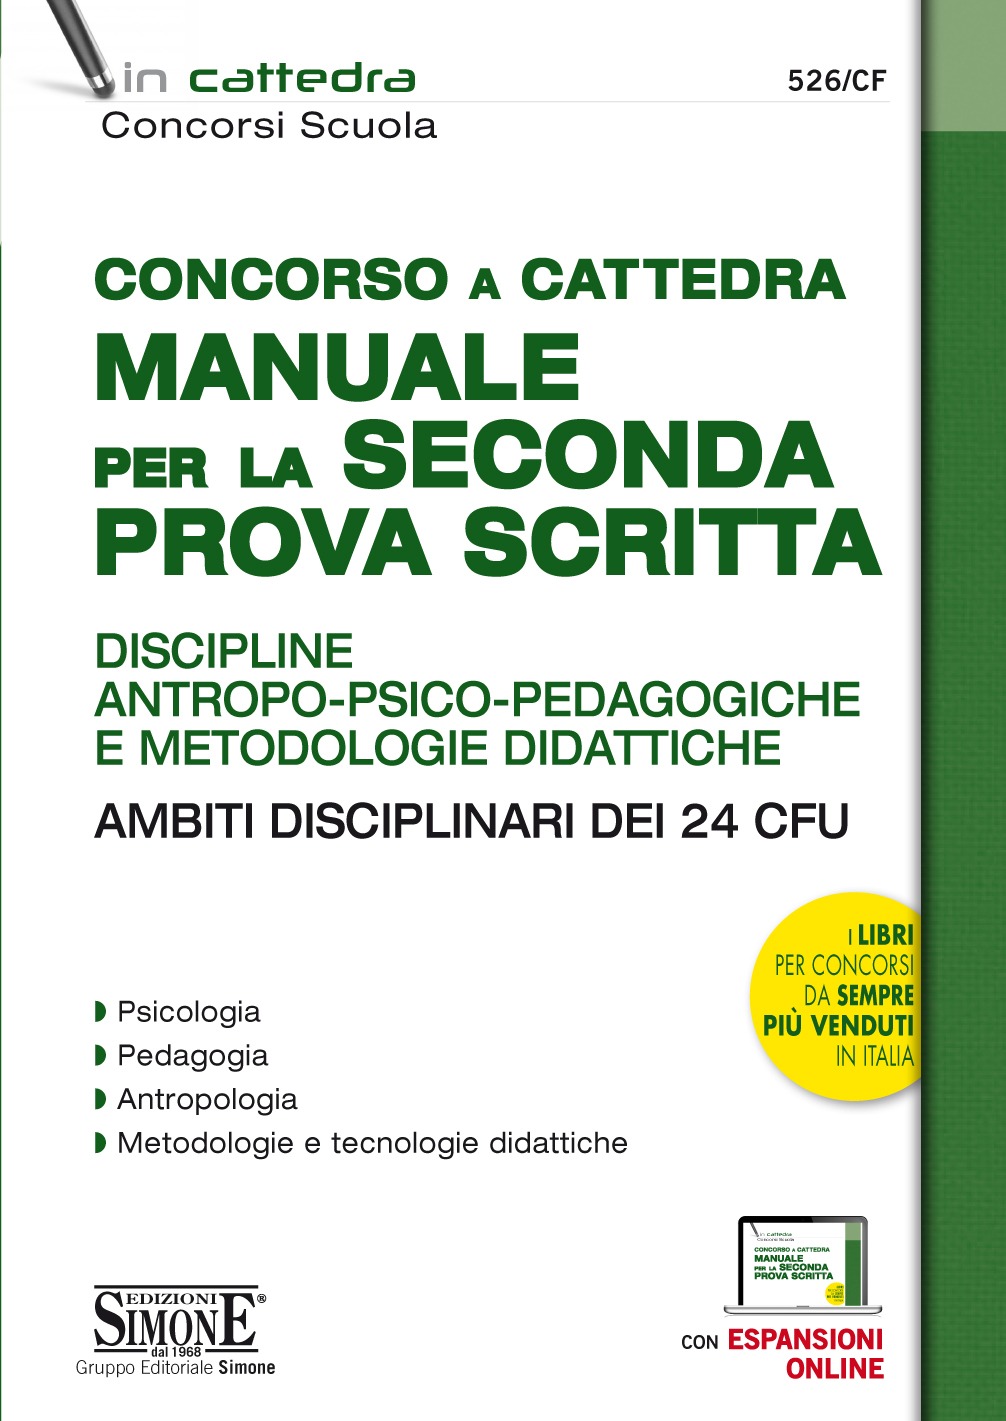 526/CF - Concorso a Cattedra Manuale per la Seconda Prova Scritta - Simone  Concorsi